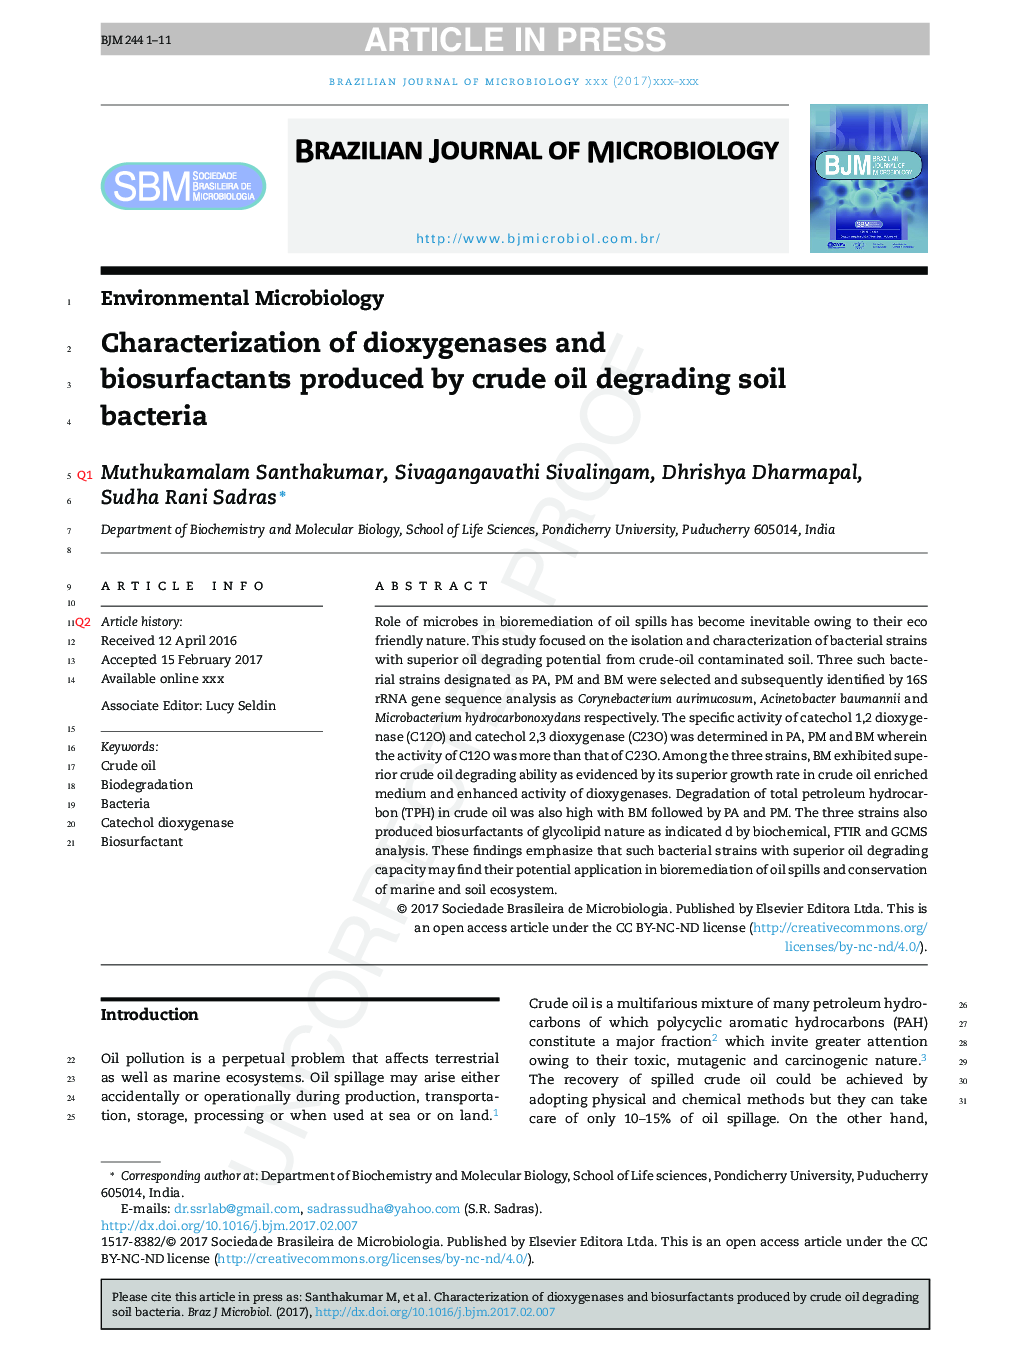 تشخیص دیوکسیاگونازها و بیوسورفکتانت های تولید شده توسط باکتری های خاک تجزیه کننده نفت خام 